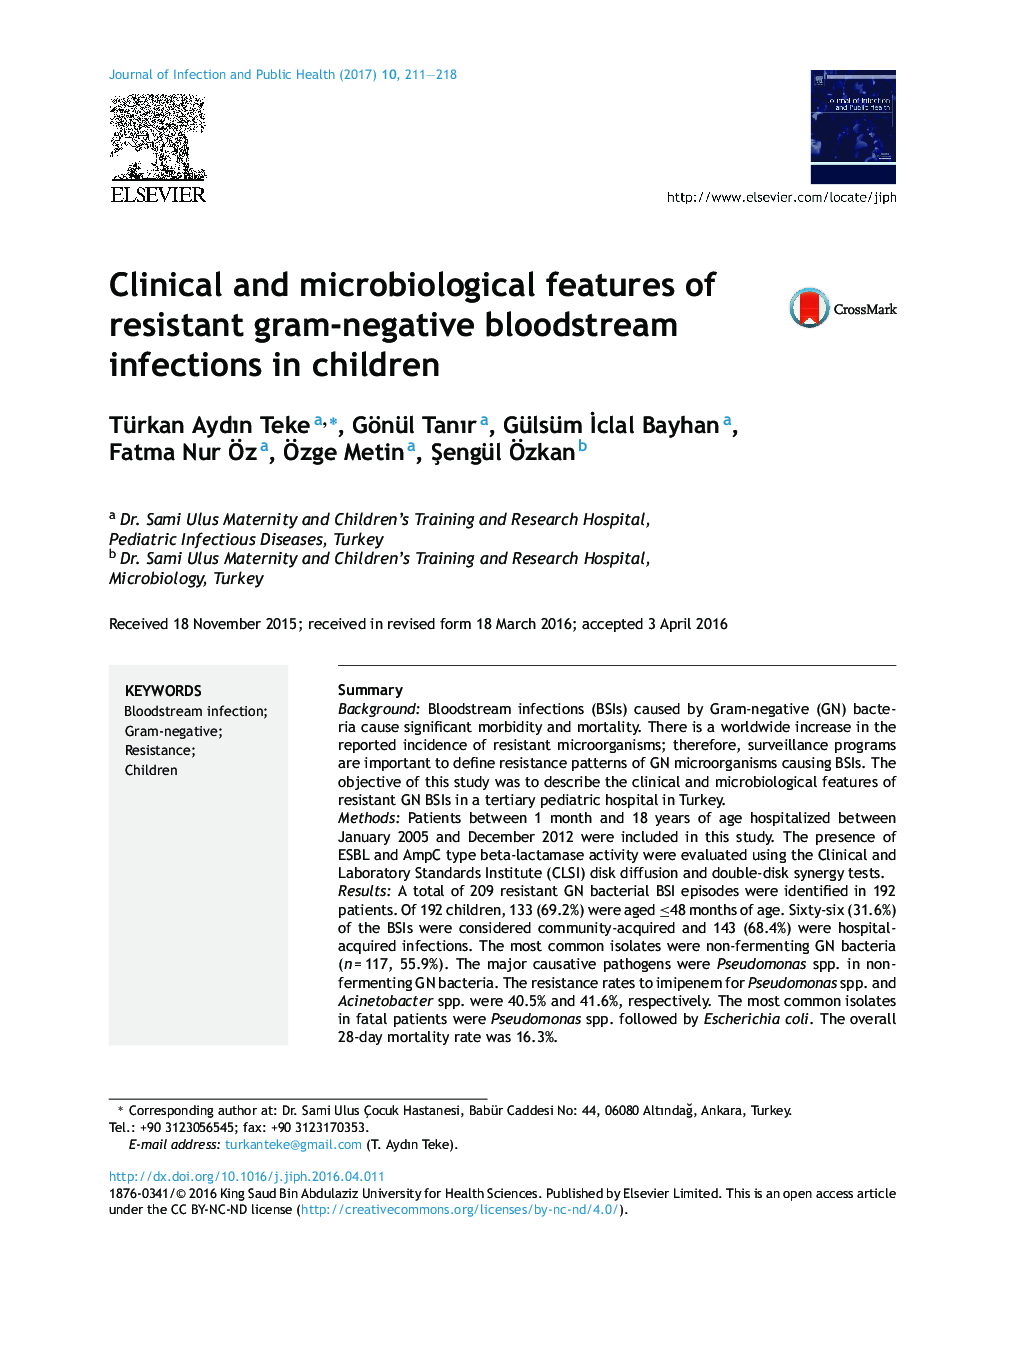 ویژگی های بالینی و میکروبیولوژیکی عفونت های مقاوم به گرم منفی خون در کودکان 